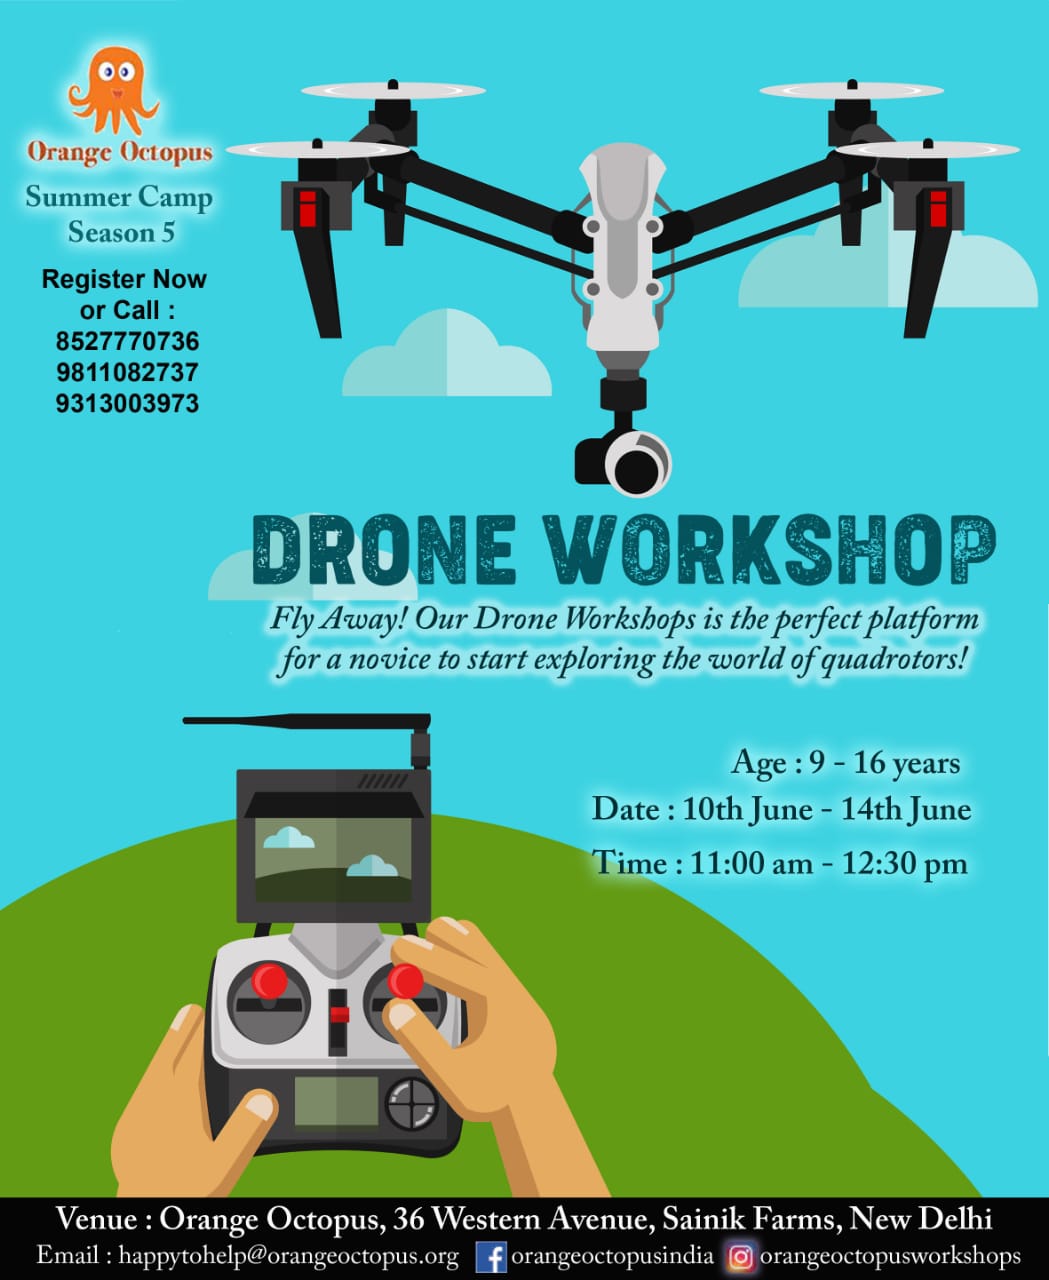 Drone Workshop, South Delhi, Delhi, India